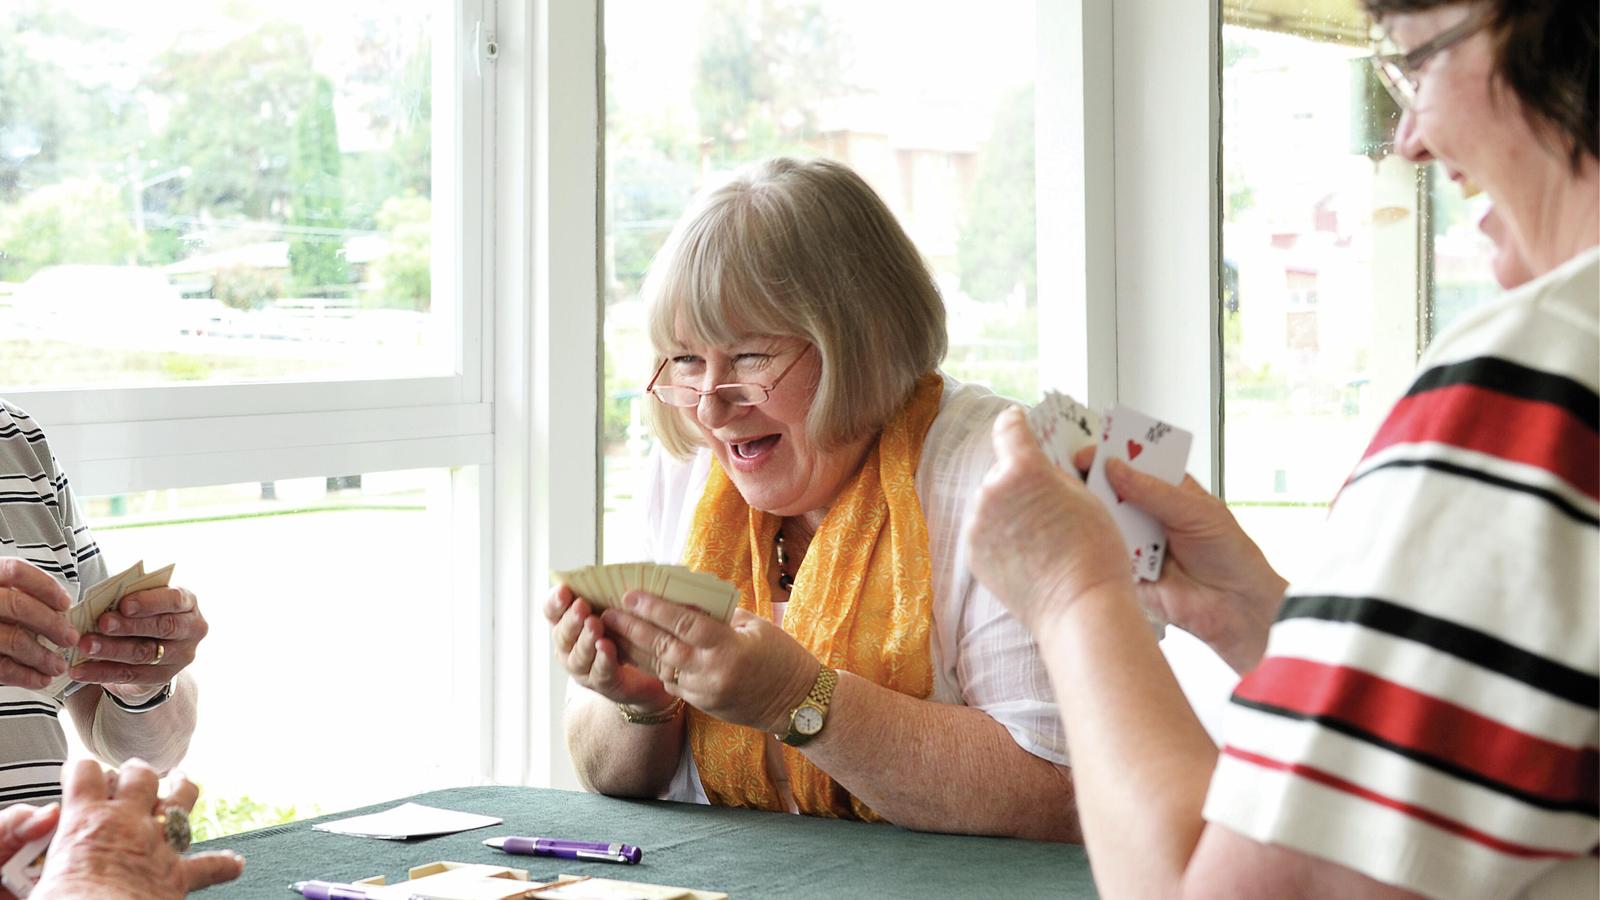 Donna, uživatelka systému Cochlear, se směje při hraní karet